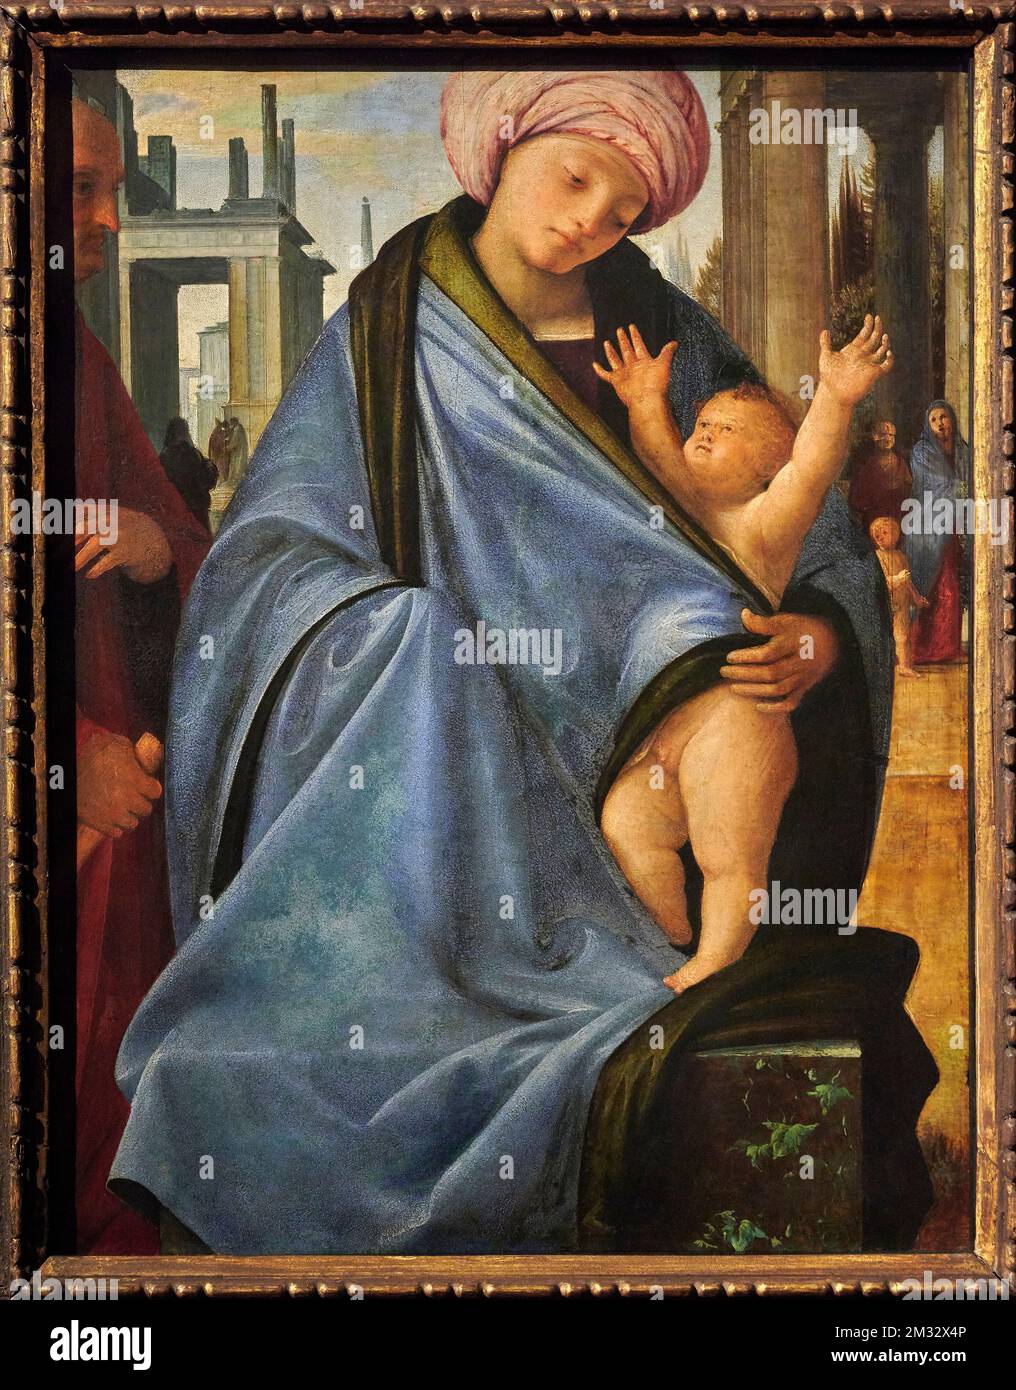 Sacra Famiglia   - olio su tavola   - Bartolomeo Suardi detto Bramantino  - 1510   - Milano, Italia, Pinacoteca di Brera Stock Photo